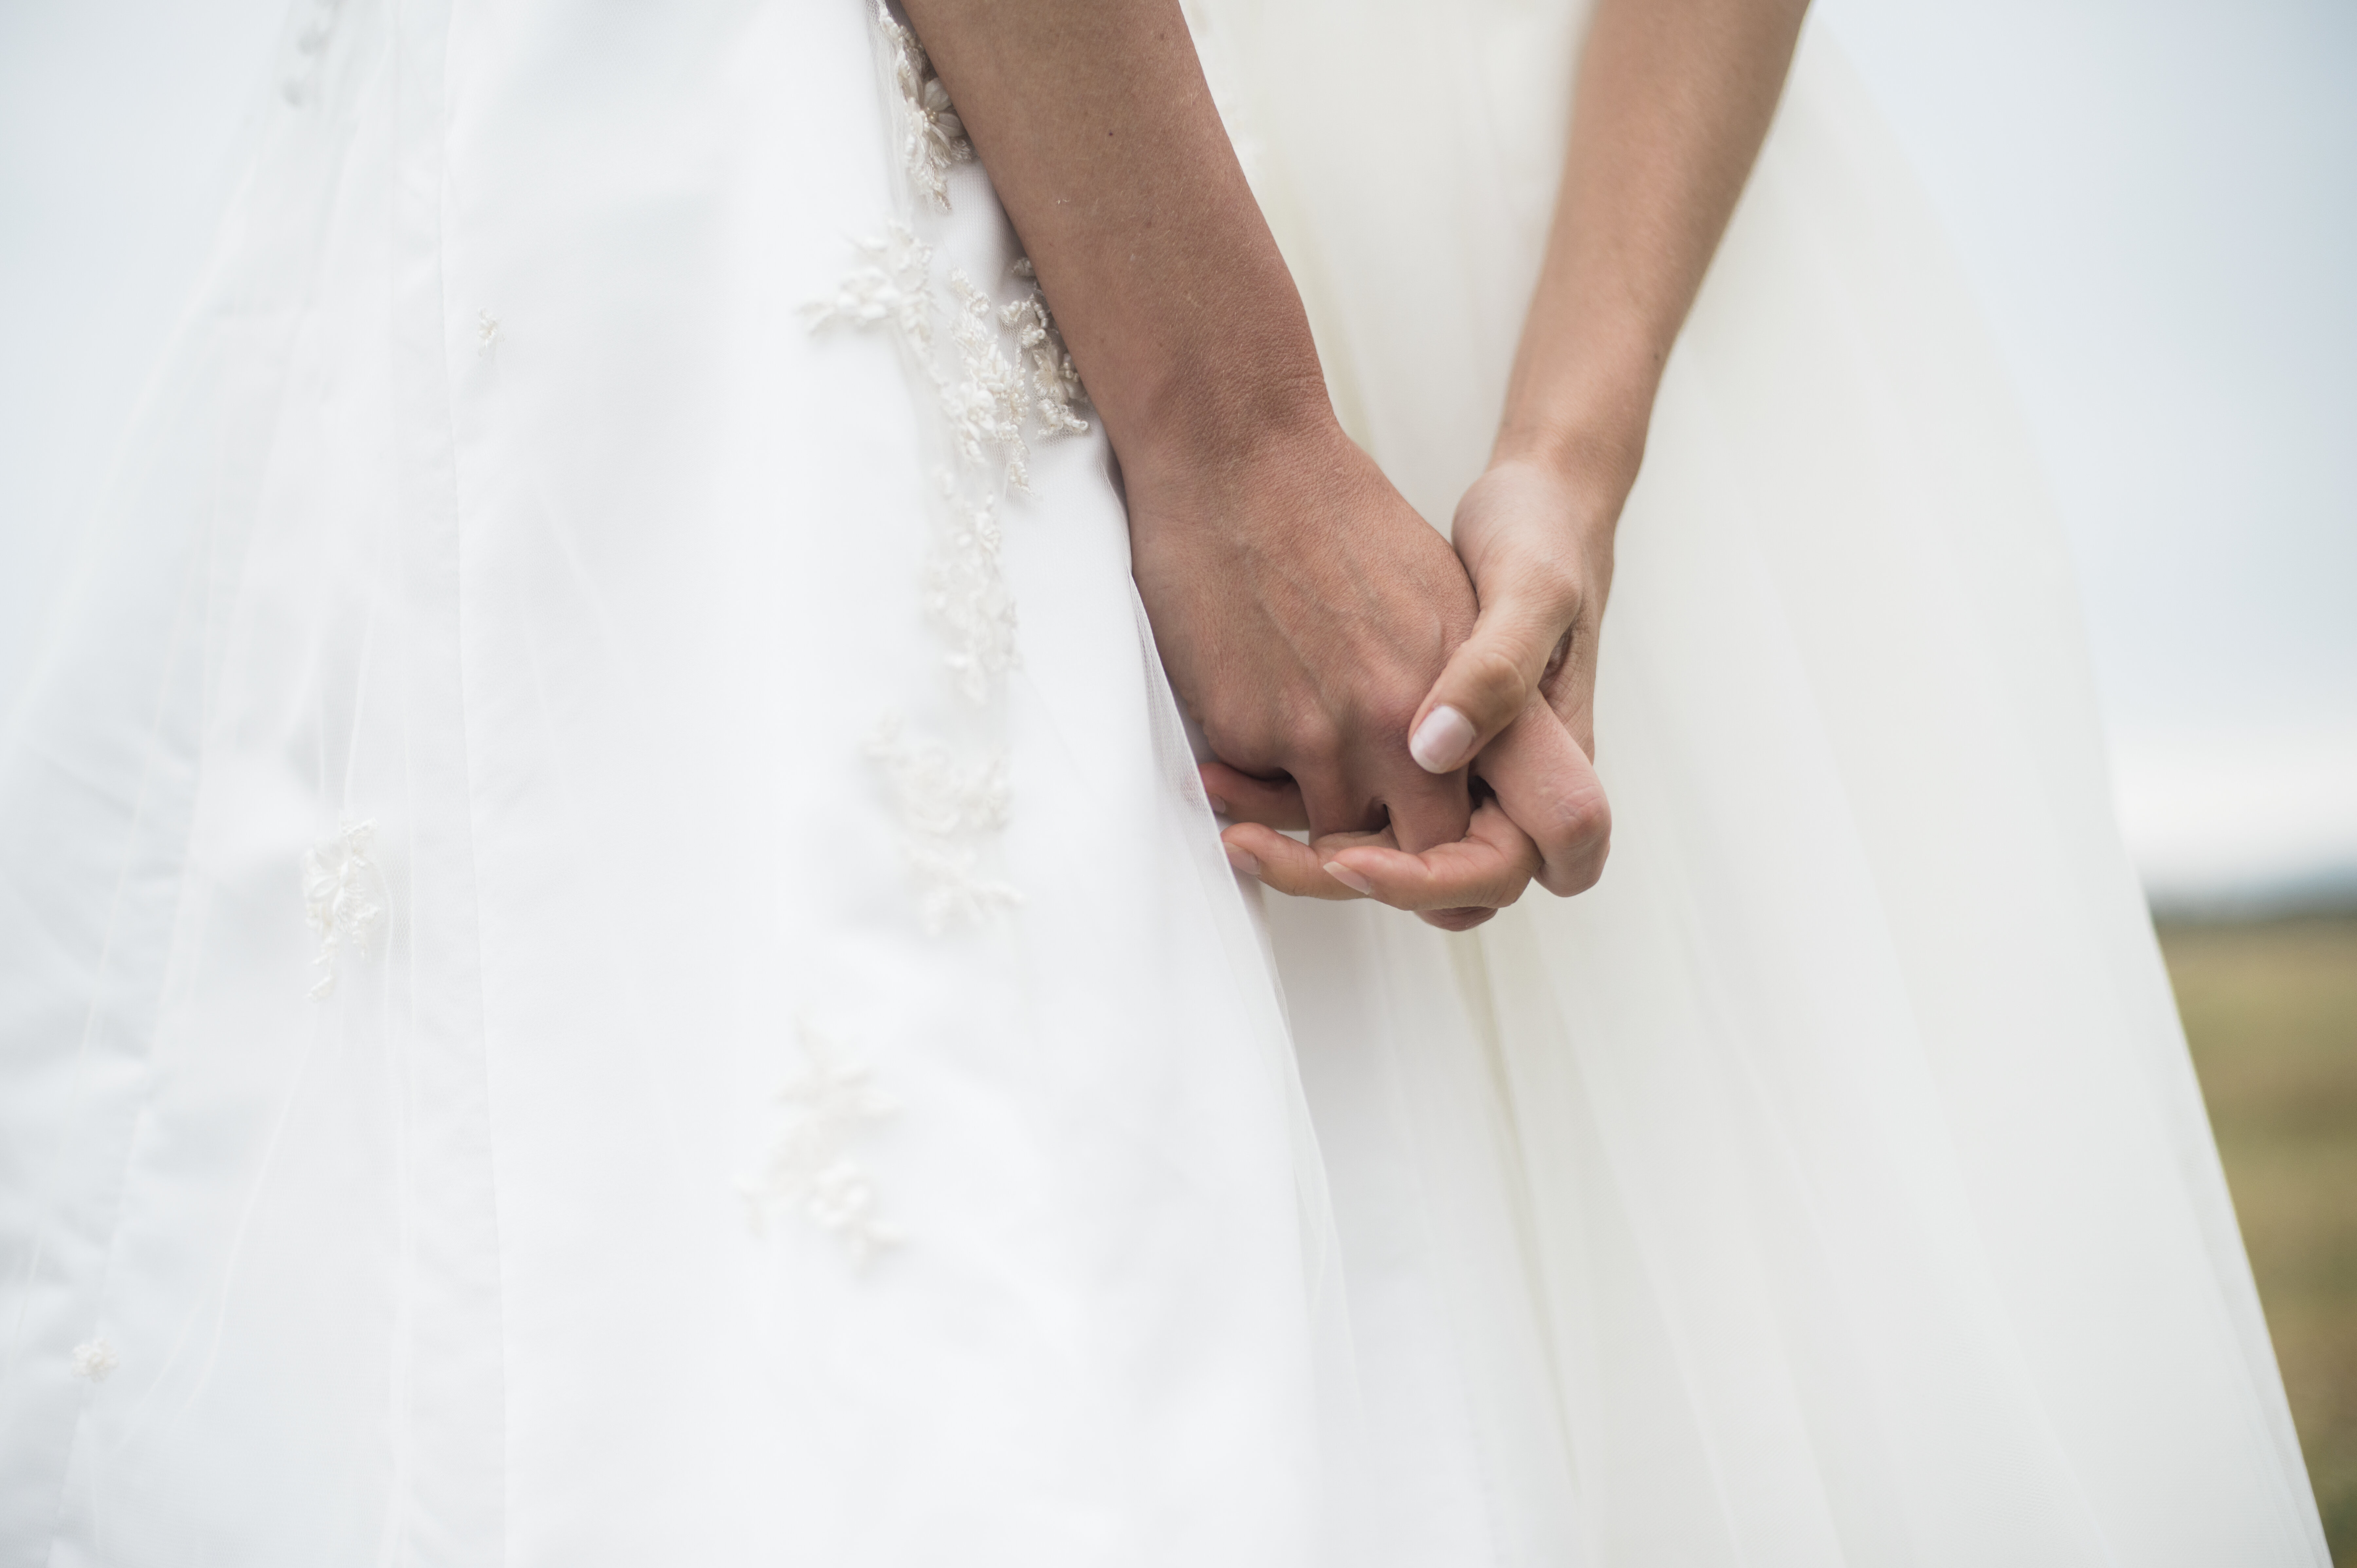 Web Designer Who Refused To Make Same Sex Wedding Websites Loses Case